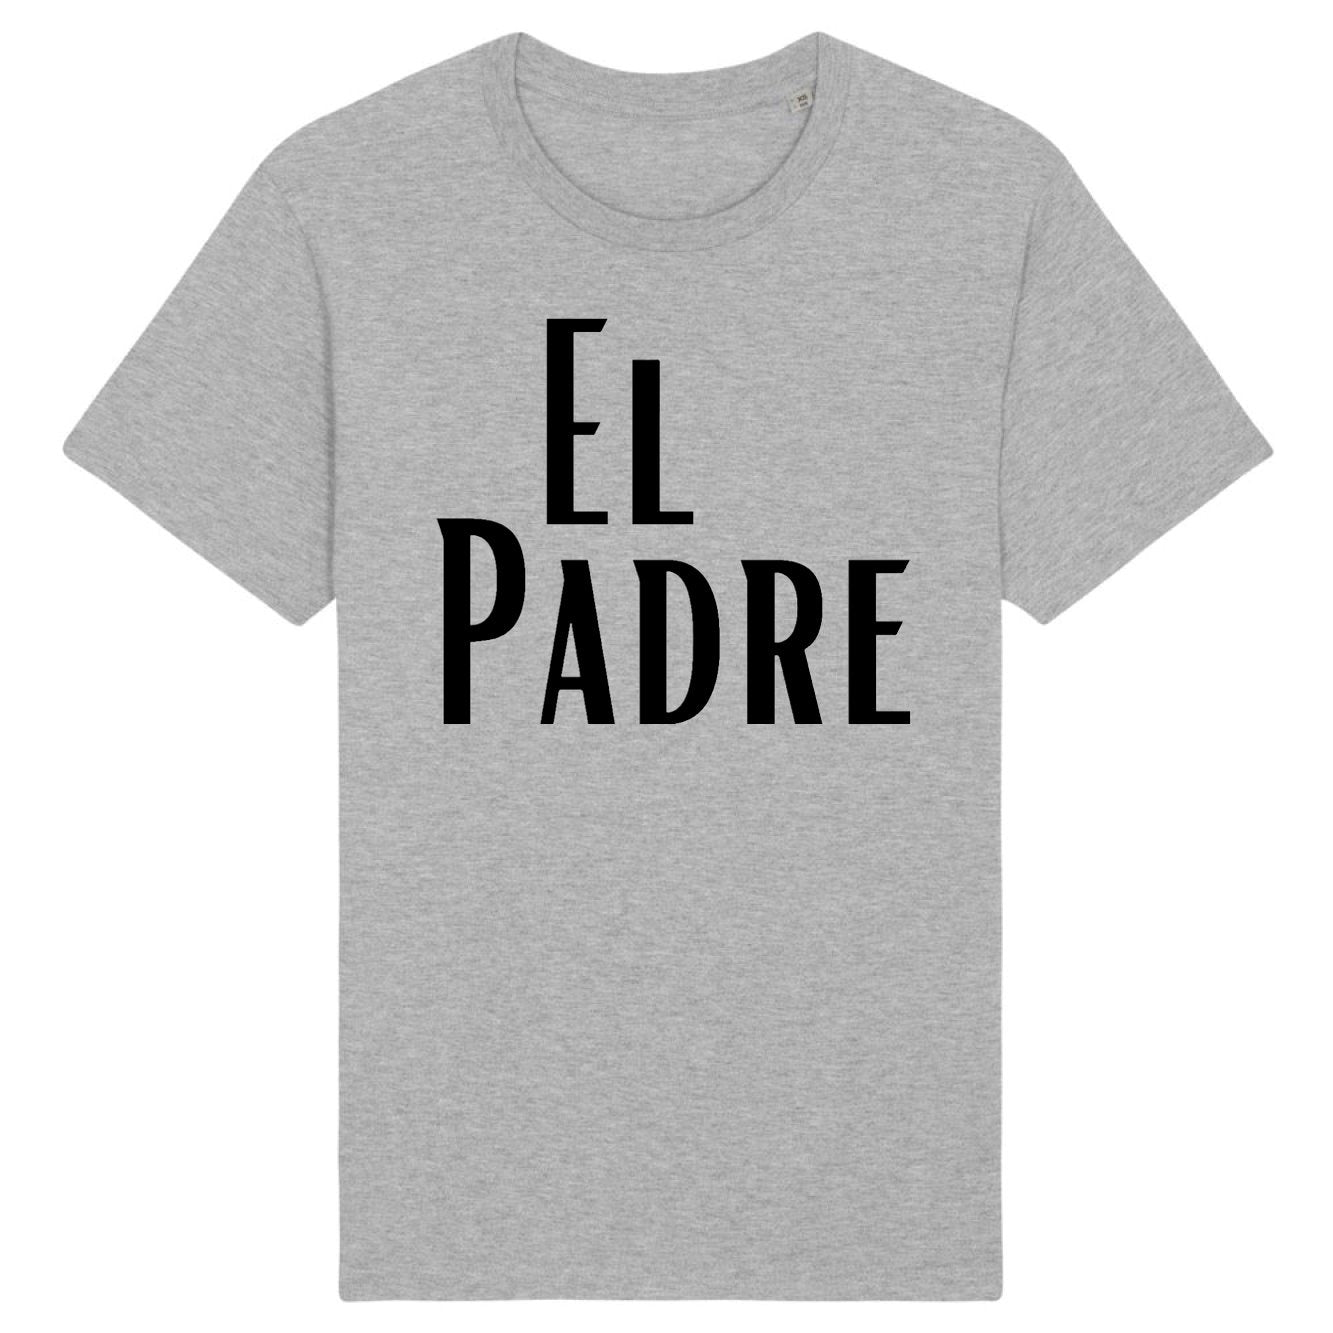 T-Shirt Homme El padre 